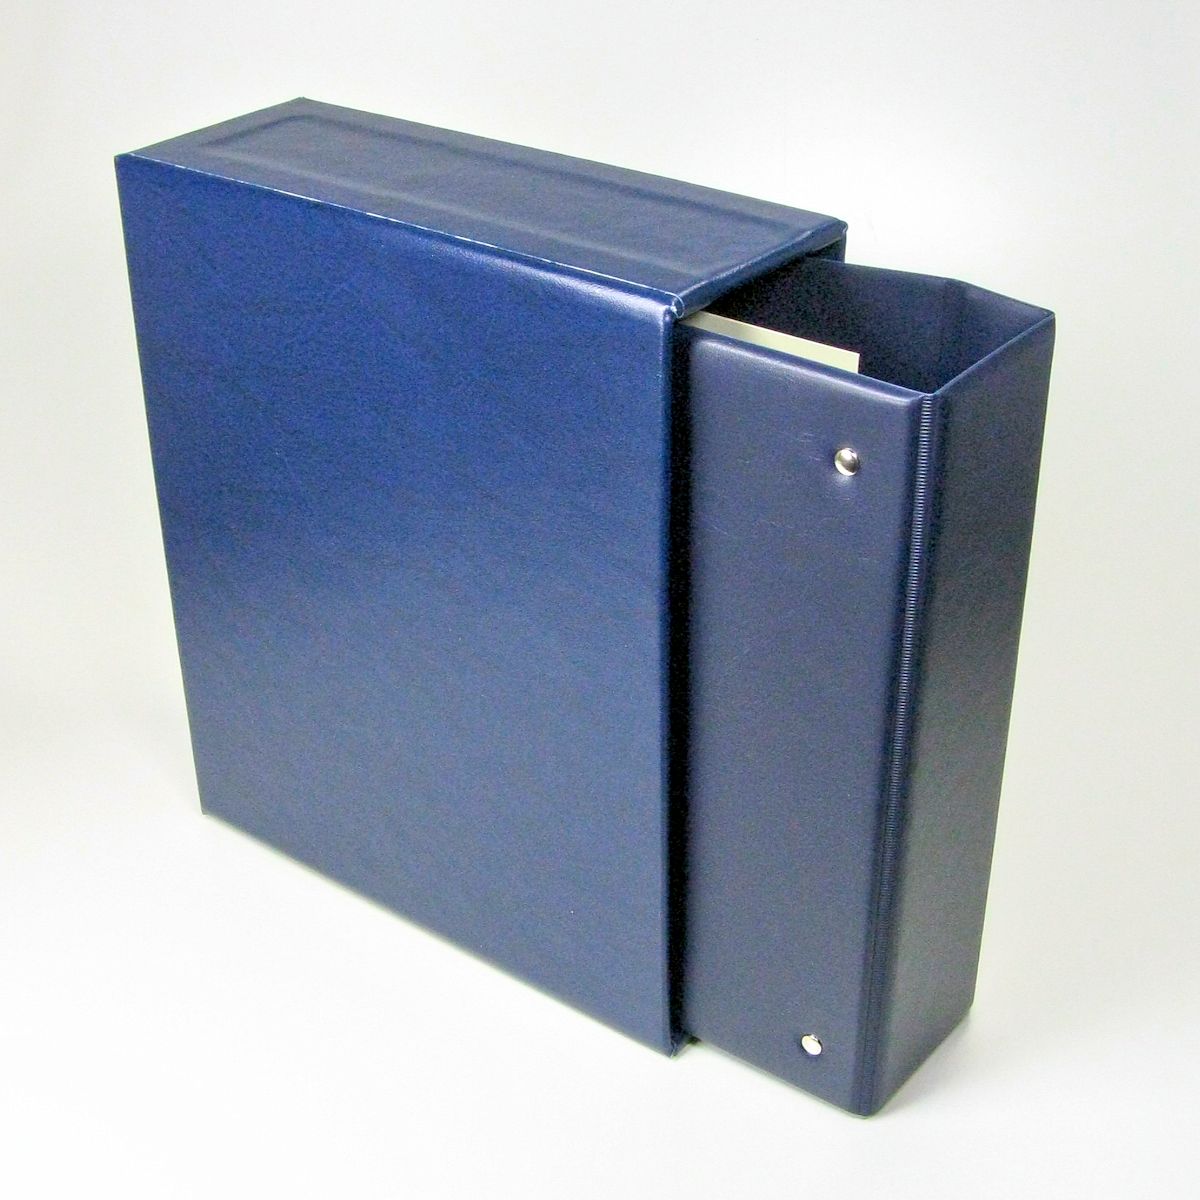 SPARSET Album mit Schuber Standard blau für Fotos, Pässe, etc. Format ca. A5